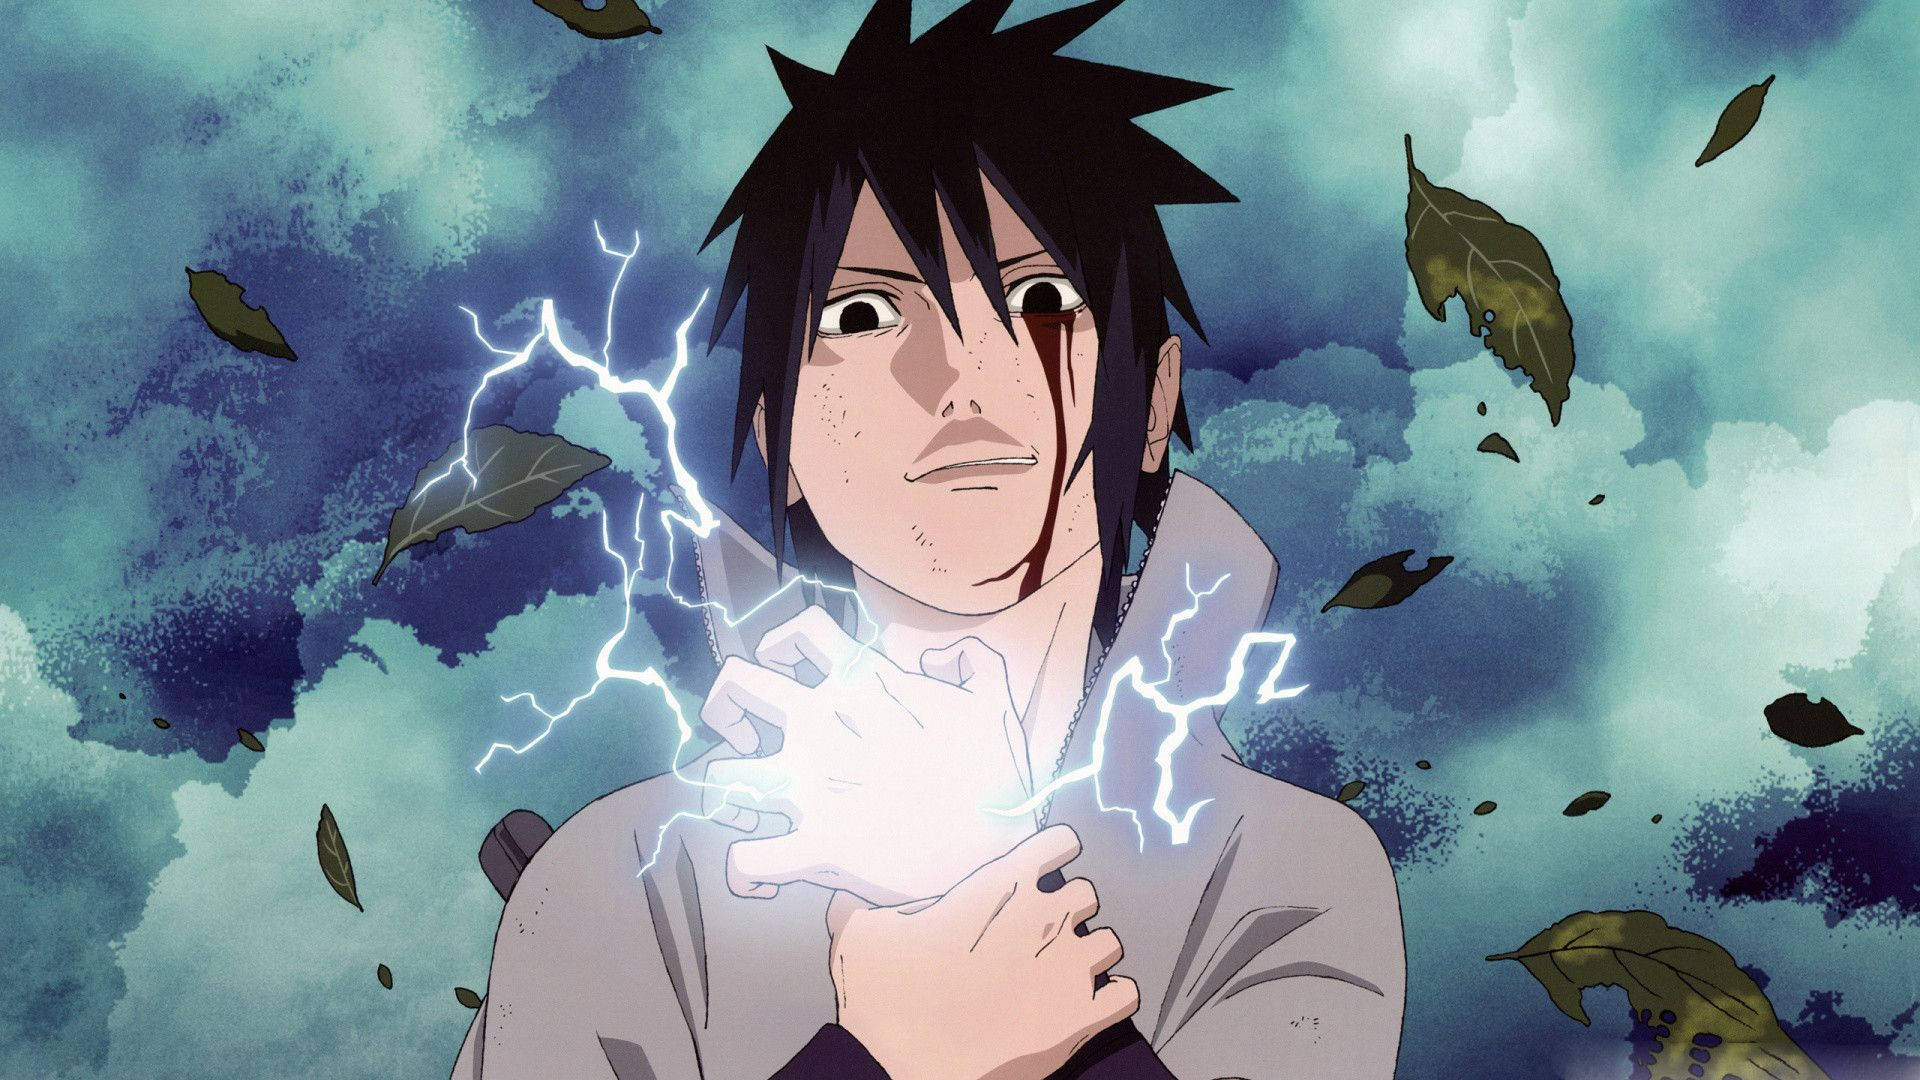 Chidori Sasuke Lightning Hand Background